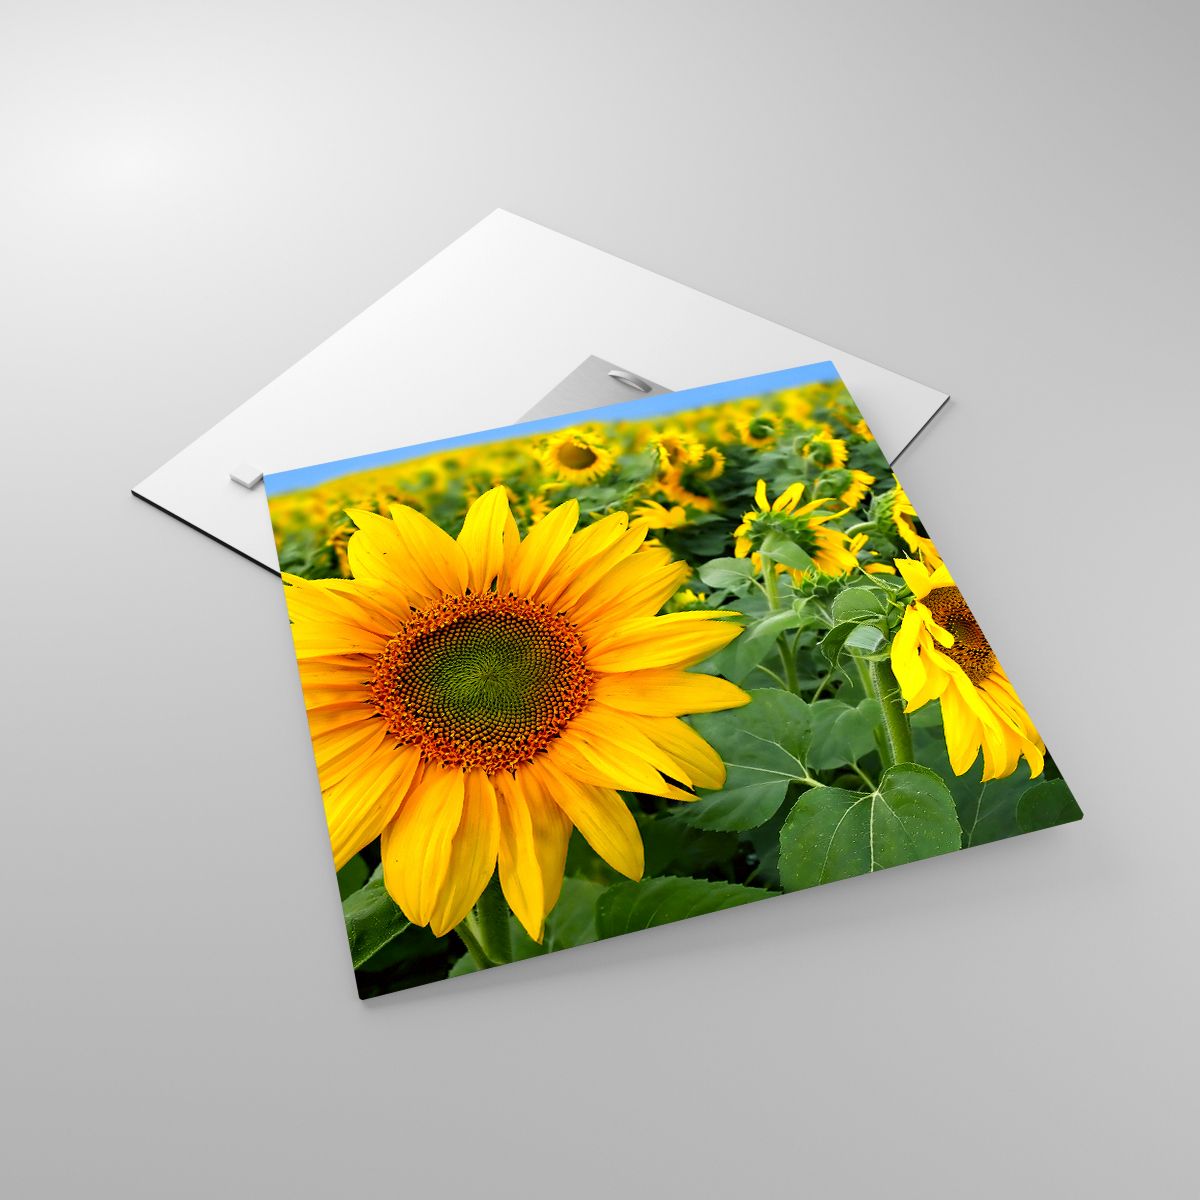 Glasbild Blumen, Glasbild Sonnenblumen, Glasbild Natur, Glasbild Garten, Glasbild Gelbe Blumen